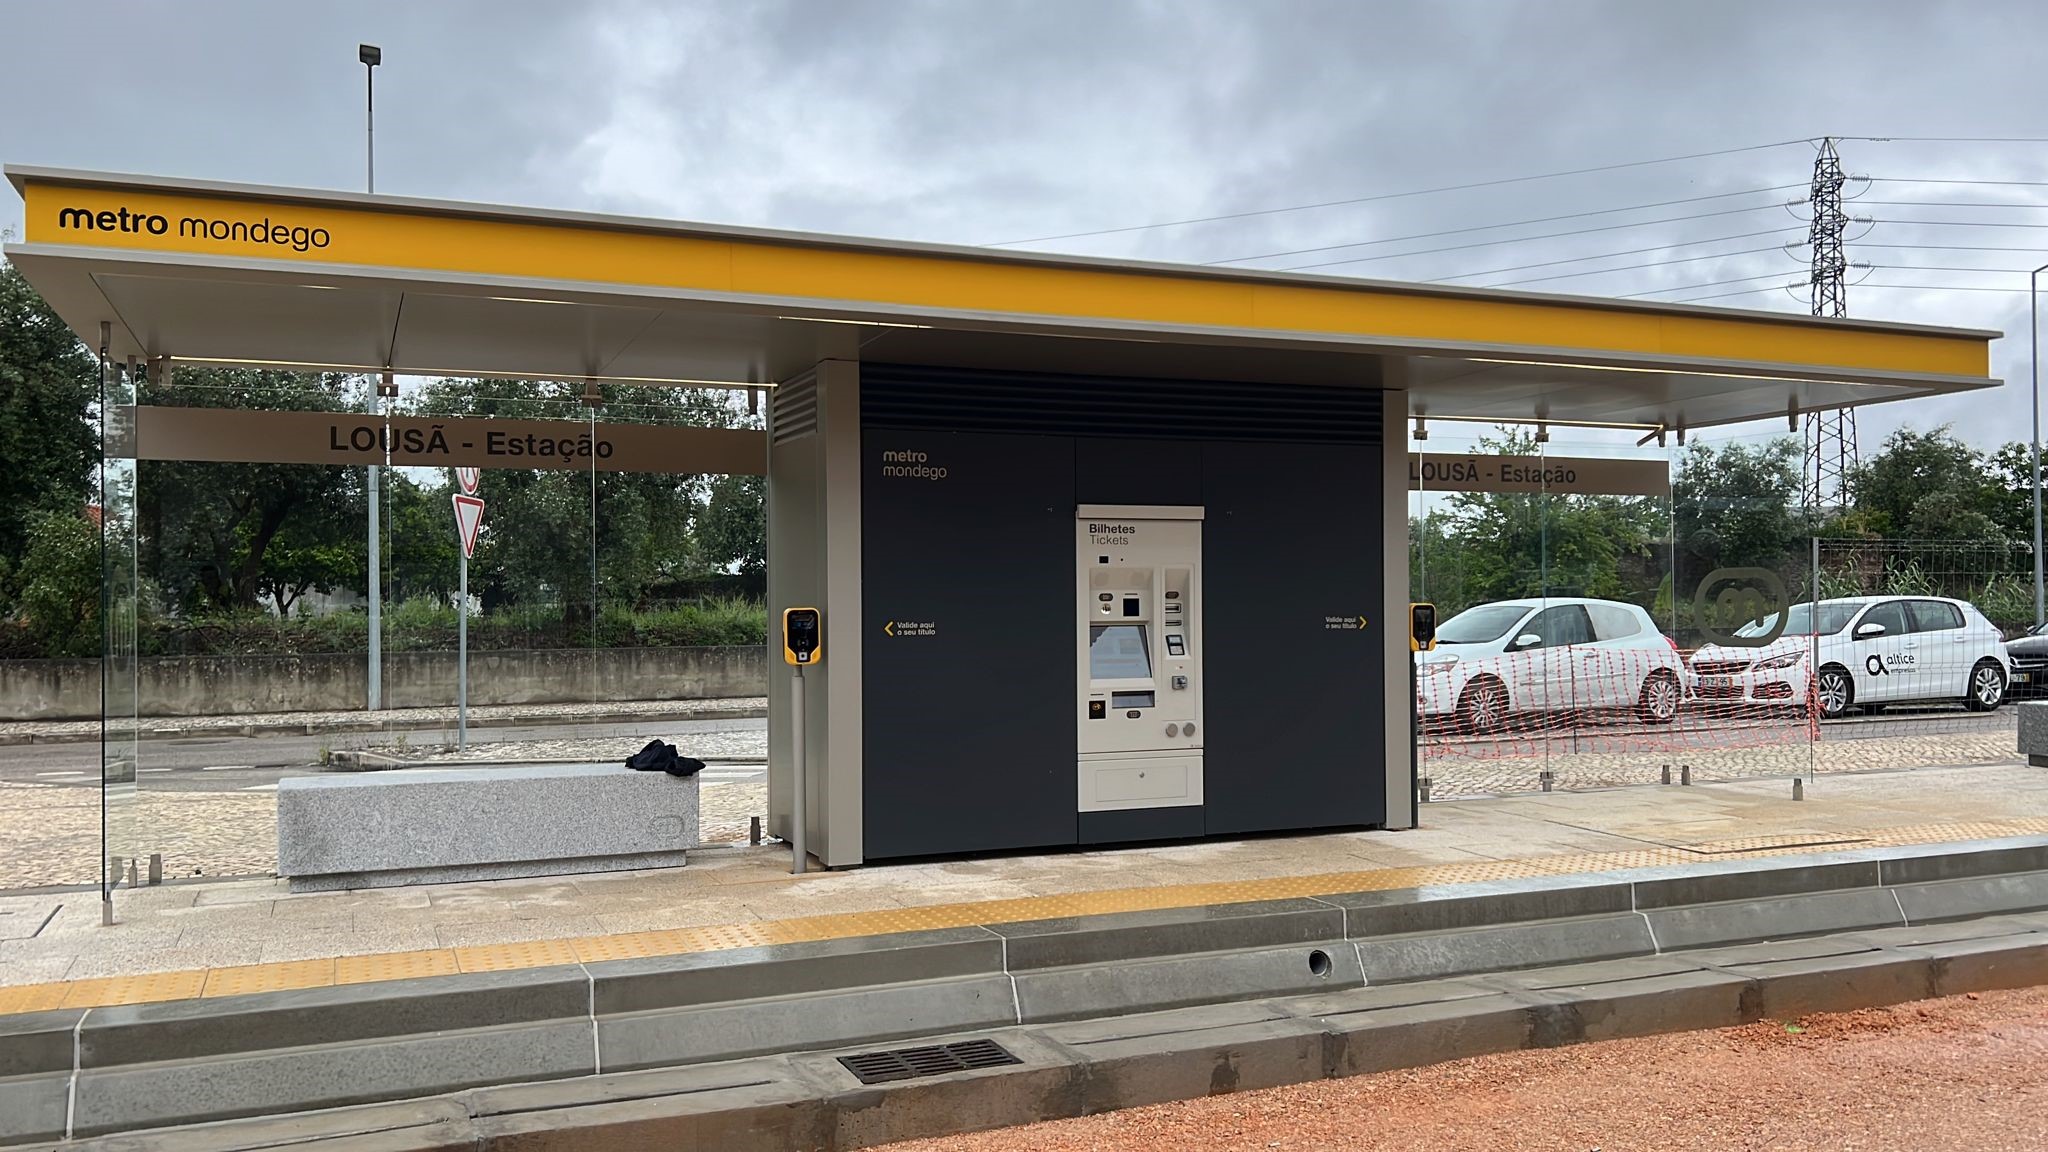 Installato il primo prototipo di TVM e validatori  presso la stazione metrobus (Coimbra)